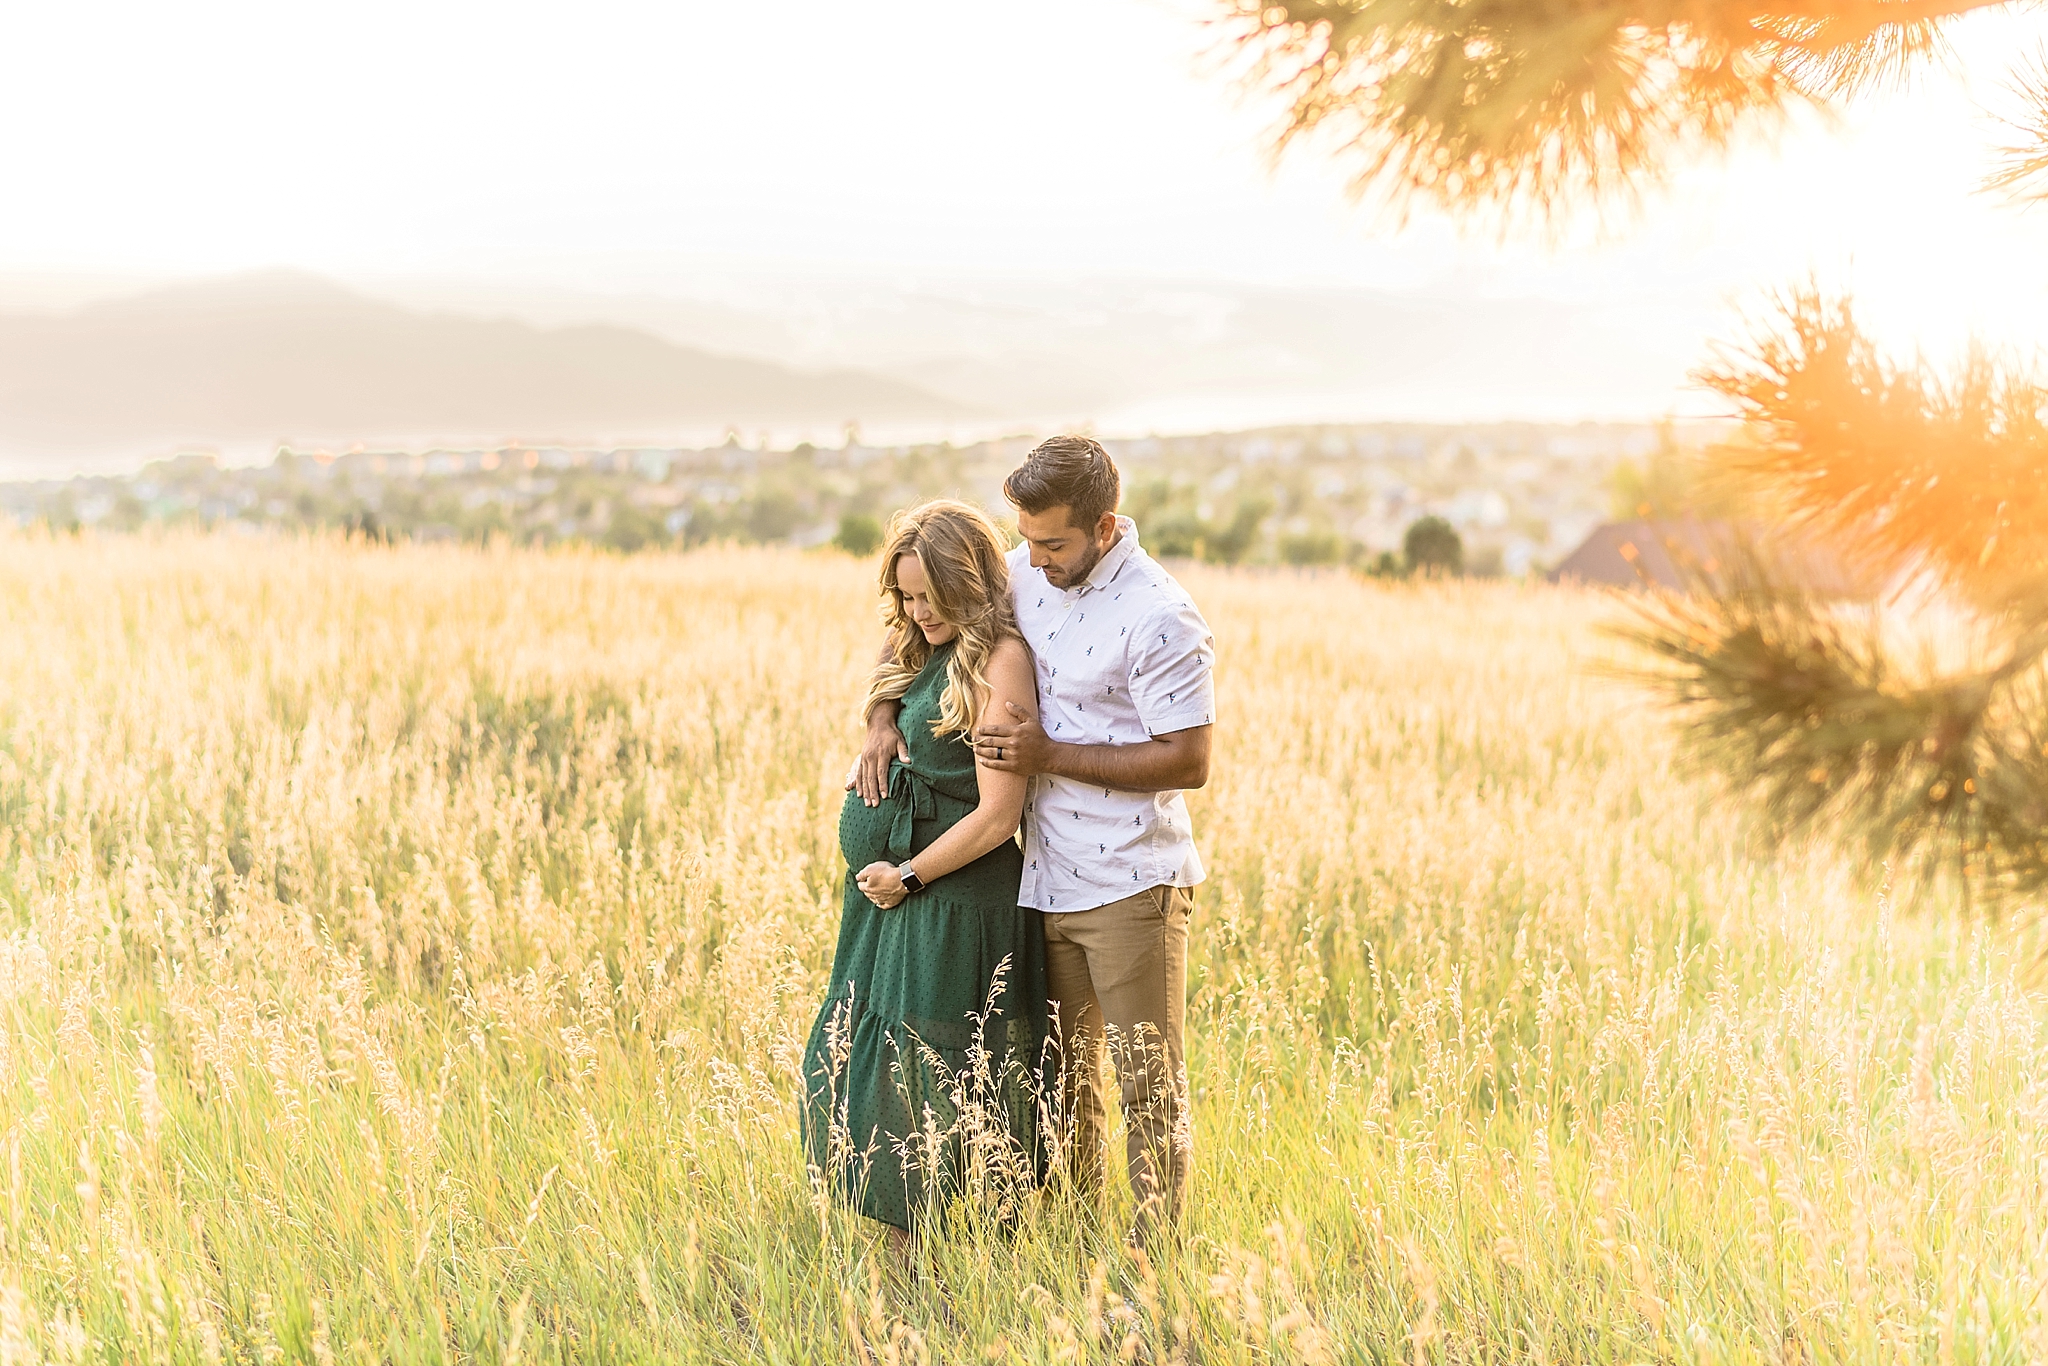 Kayla & Brad | Colorado Springs, Colorado Maternity Photographer